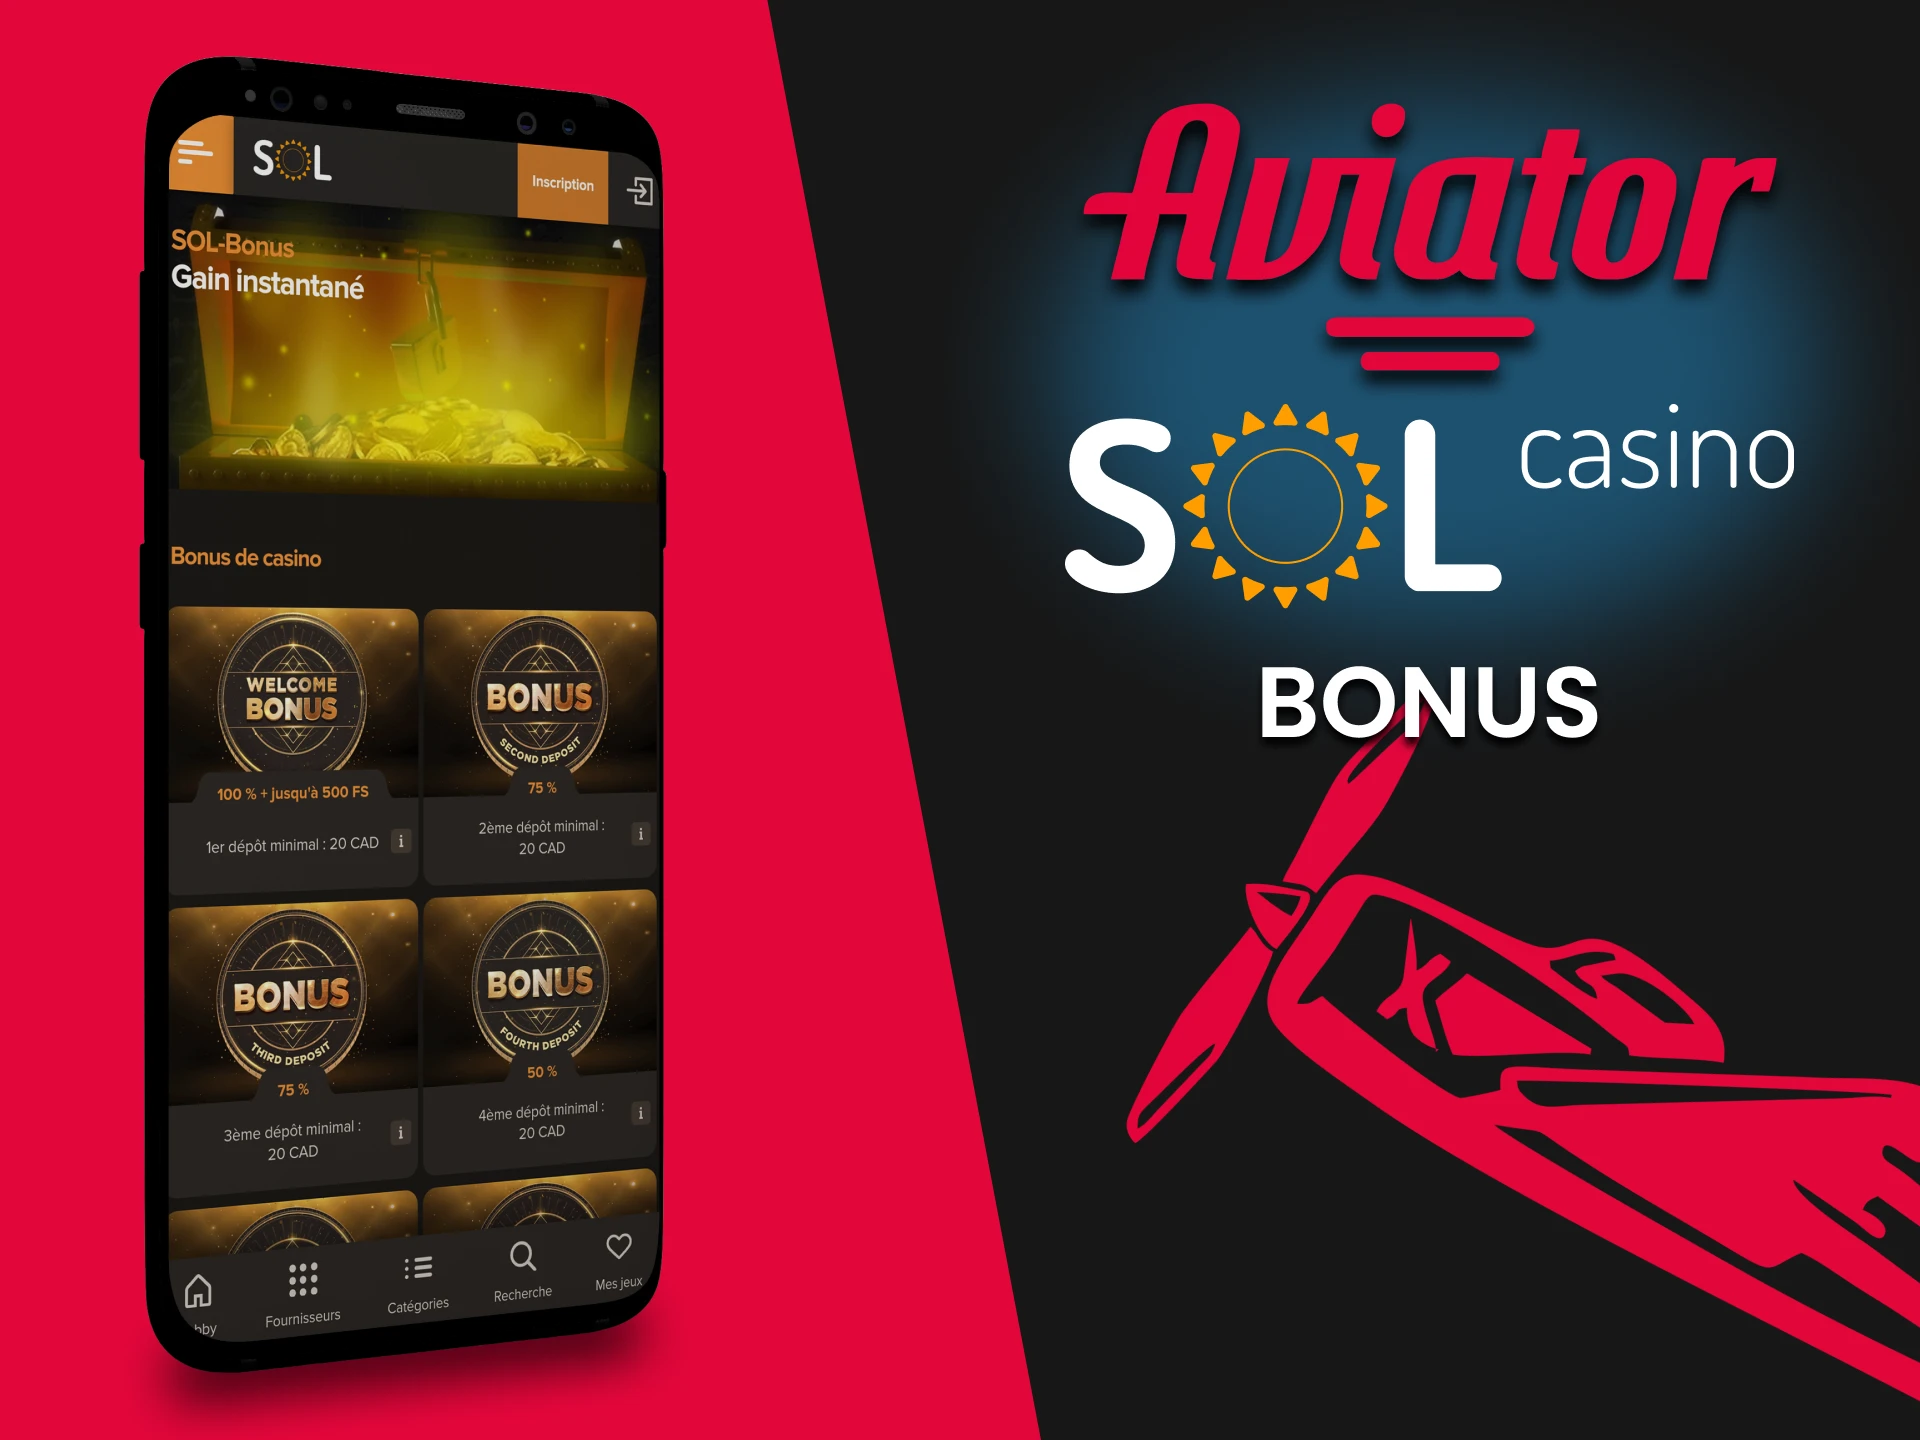 Lorsque vous jouez à Aviator dans l'application Sol Casino, vous obtenez un bonus.